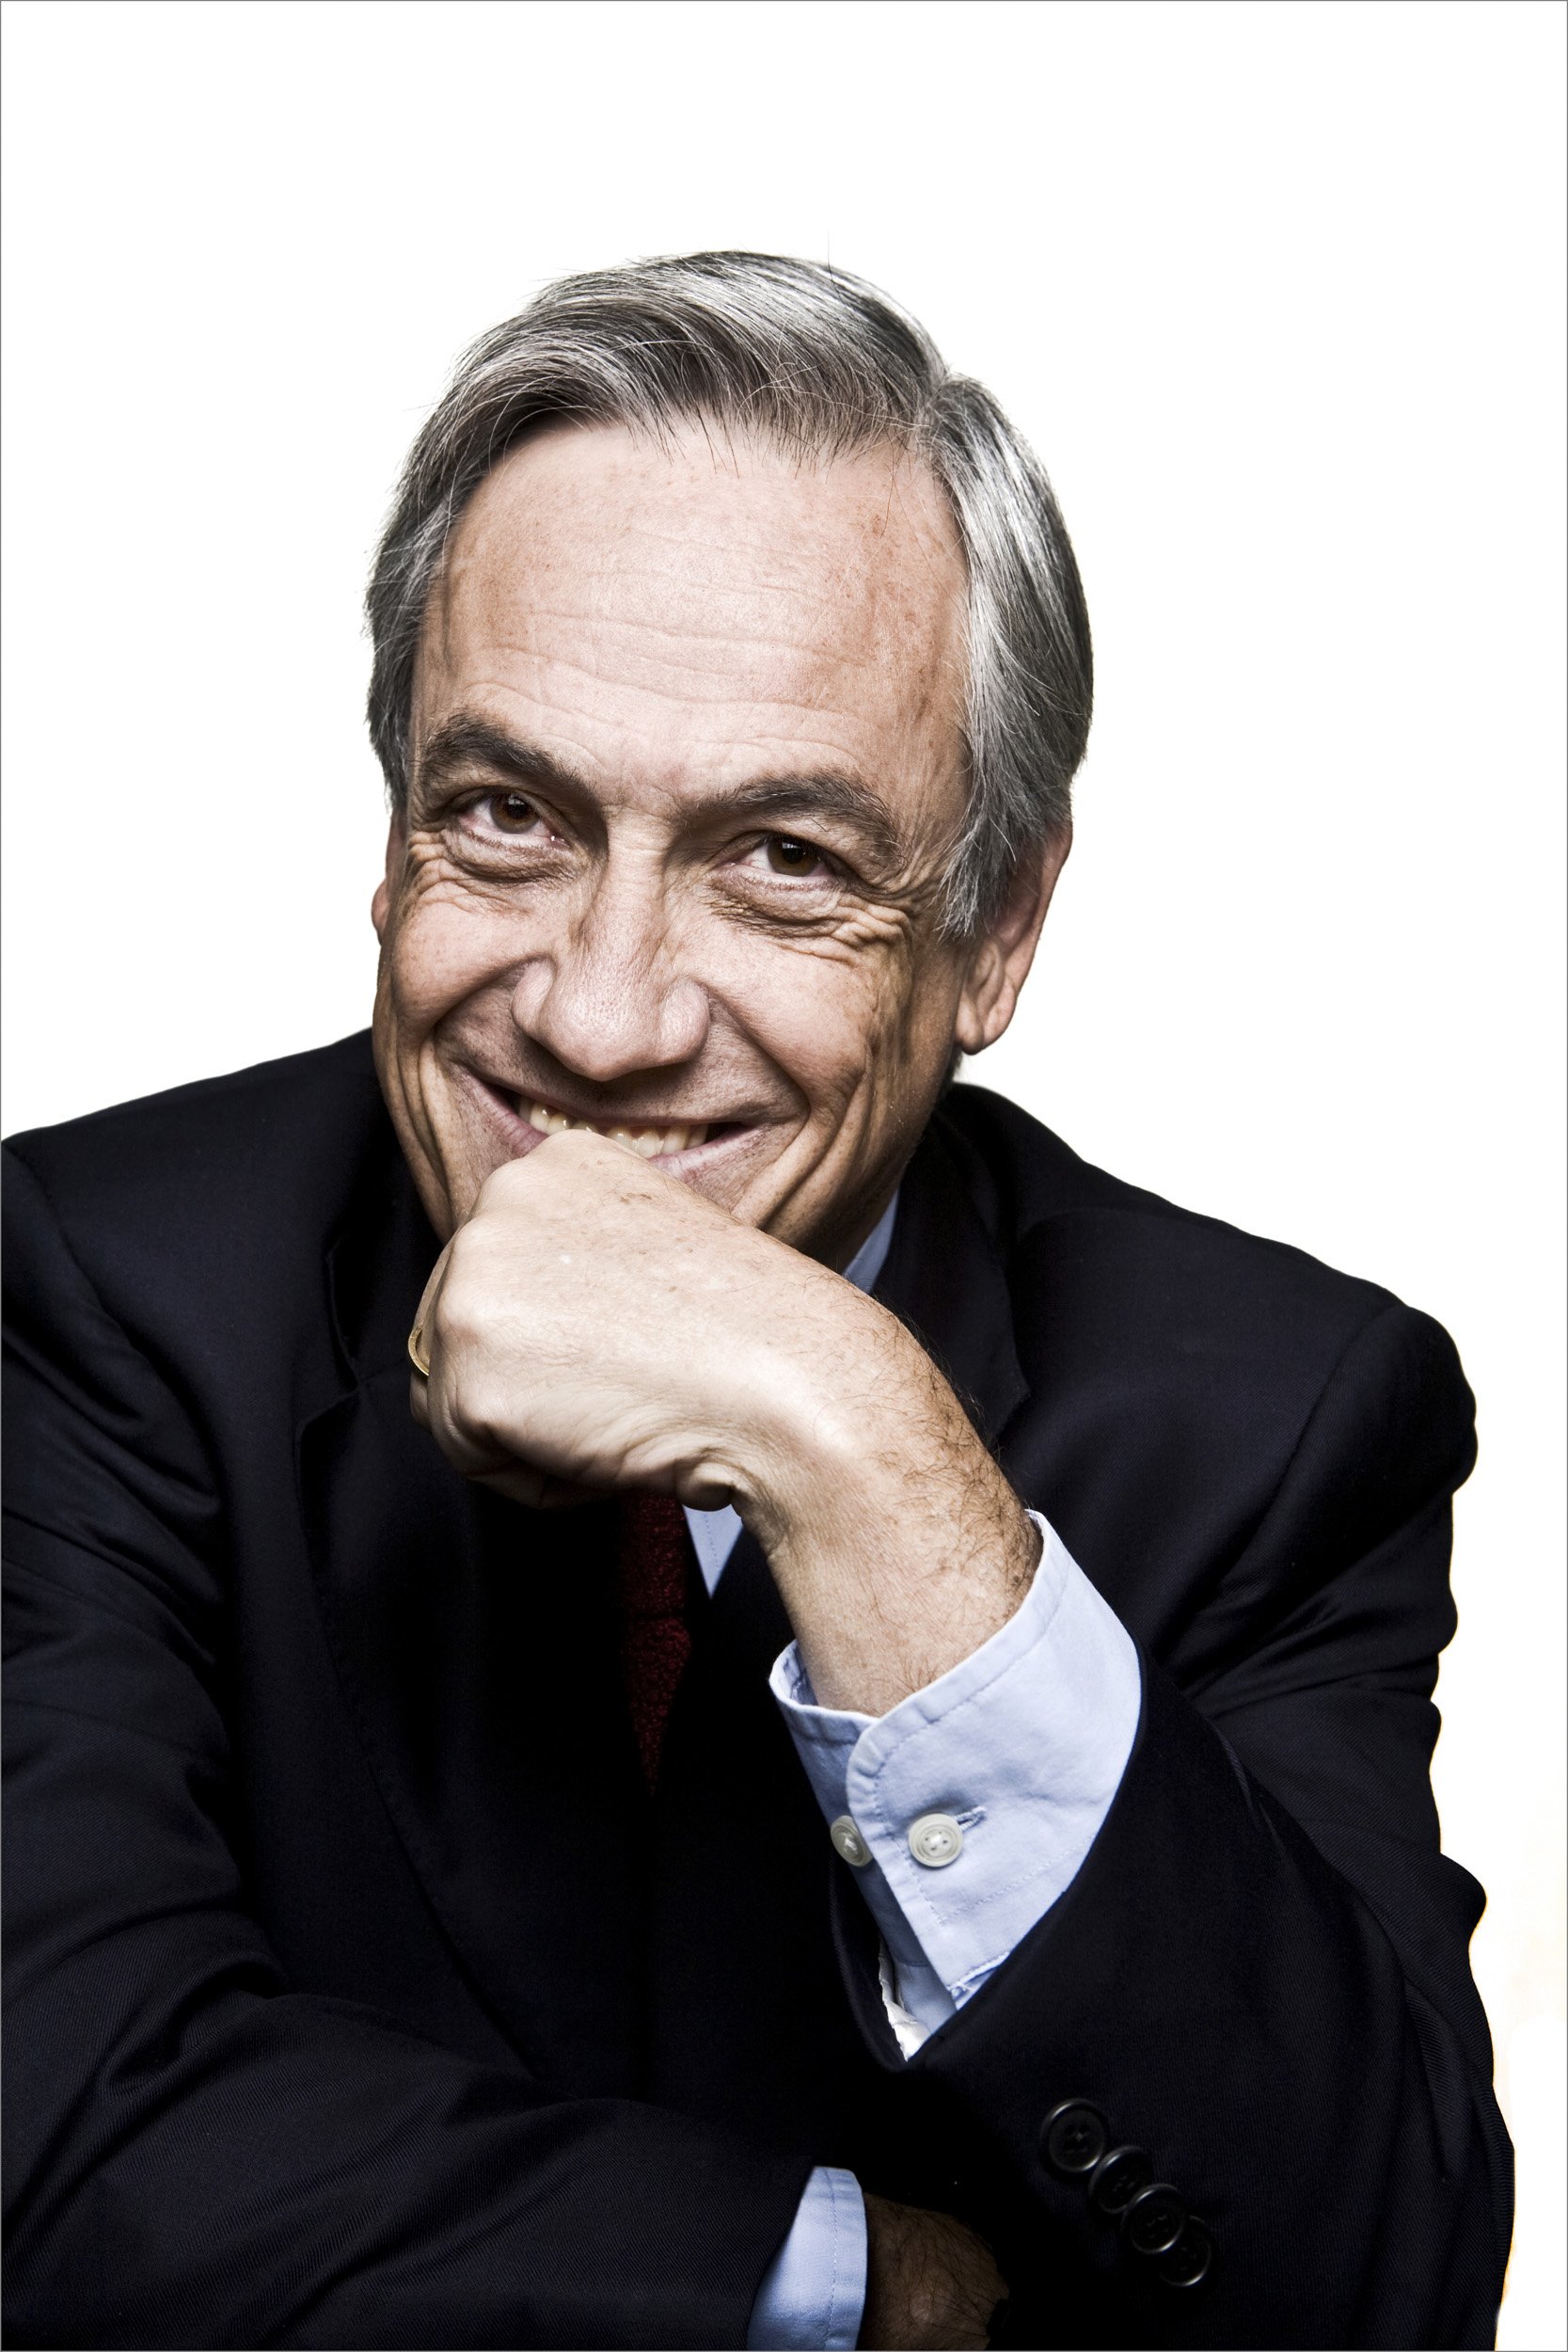 Sebastian Piñera, Former President of Chile